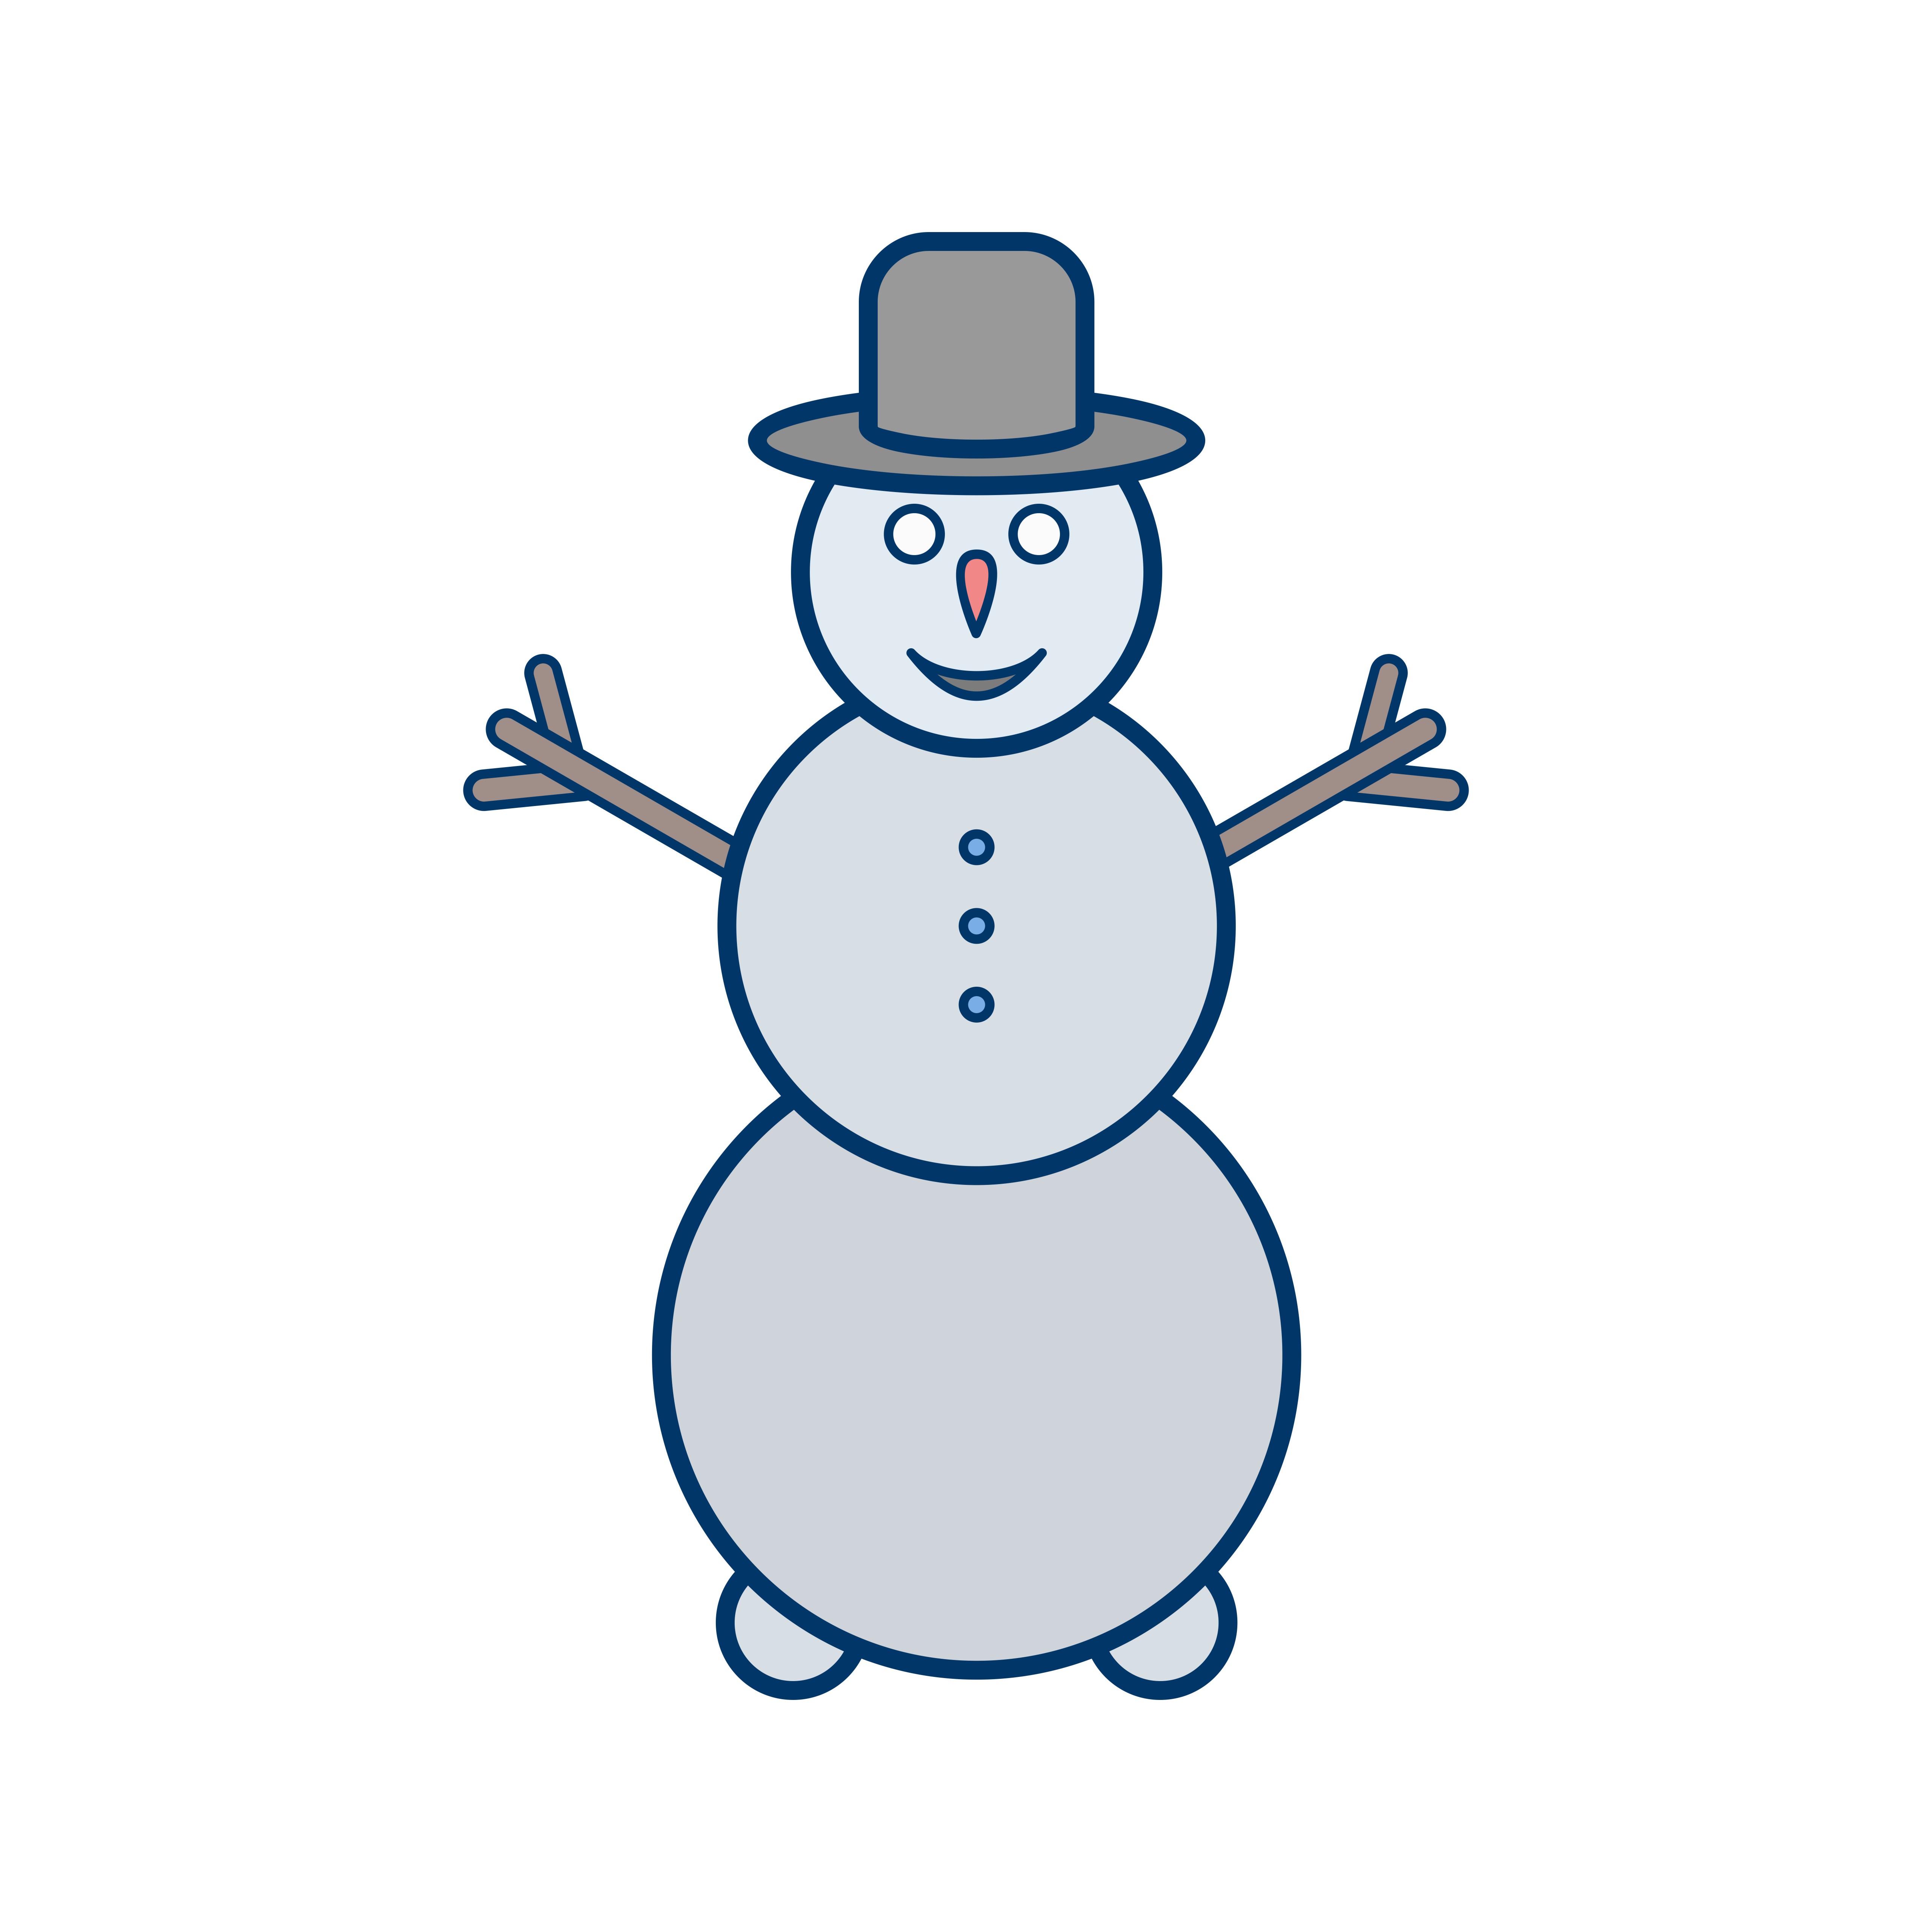 Download Snowman Vector Icon 441700 - Download Free Vectors ...